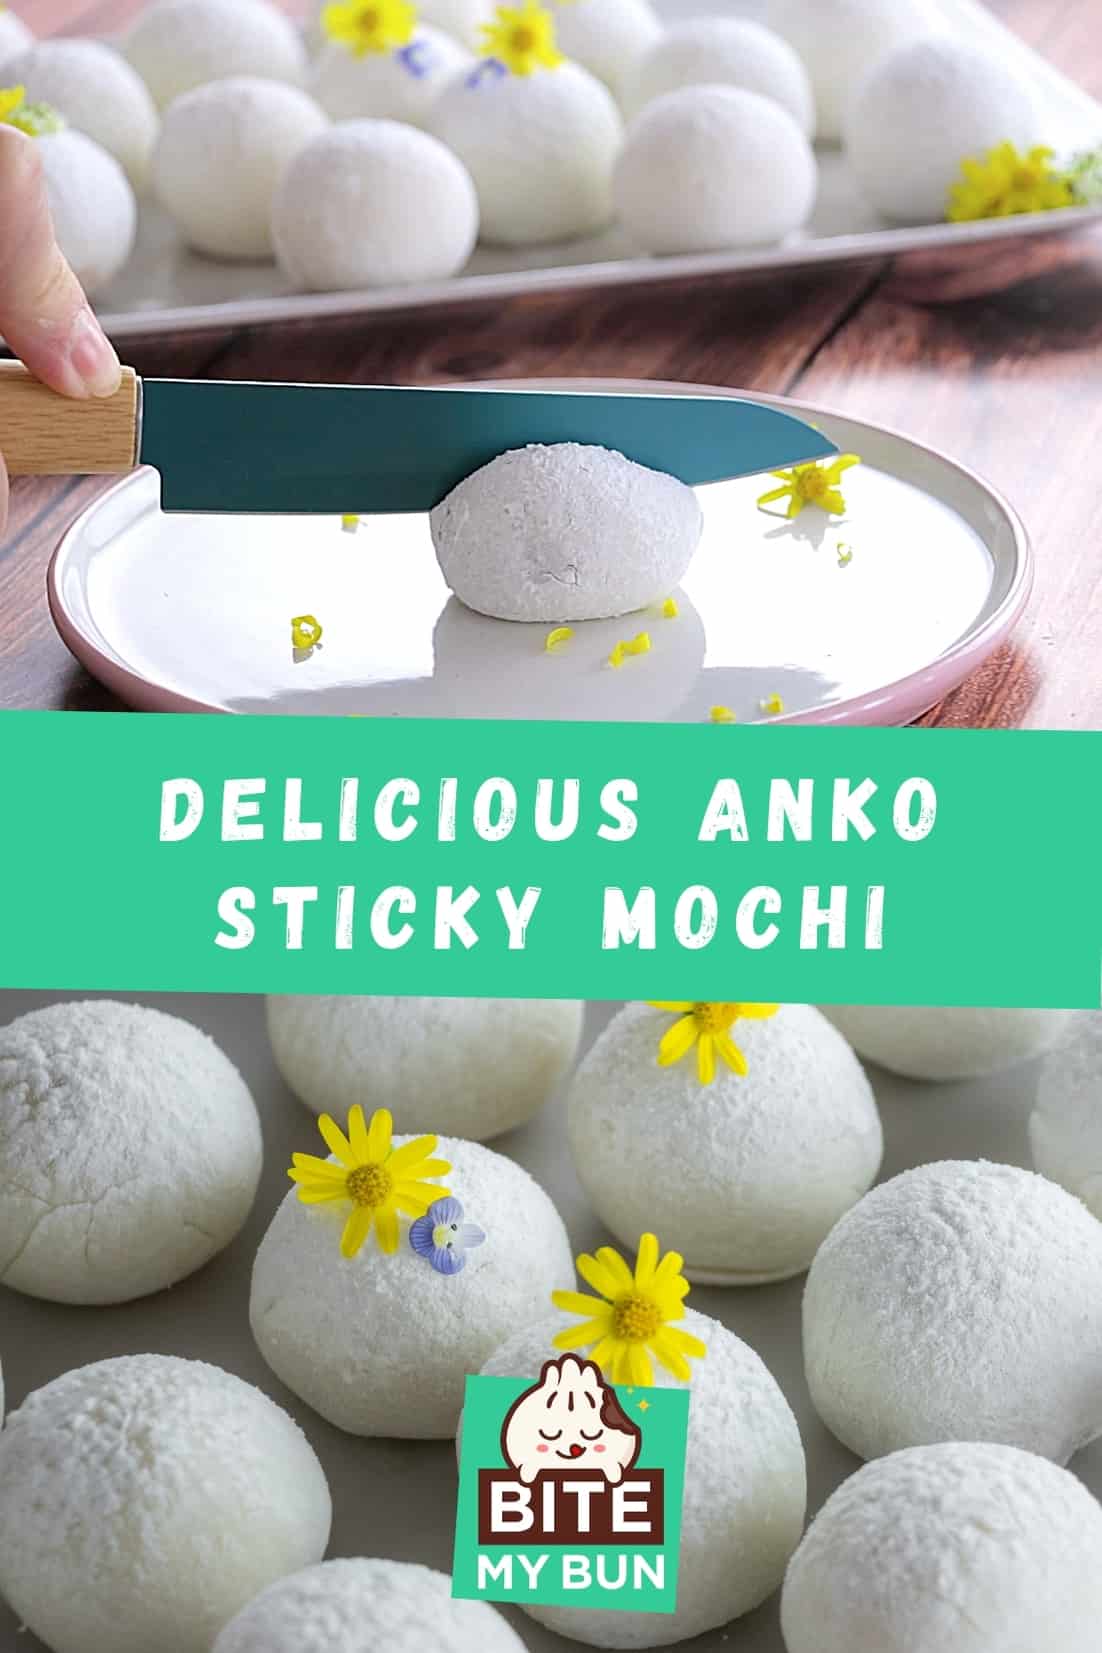 Delicious anko sticky mochi